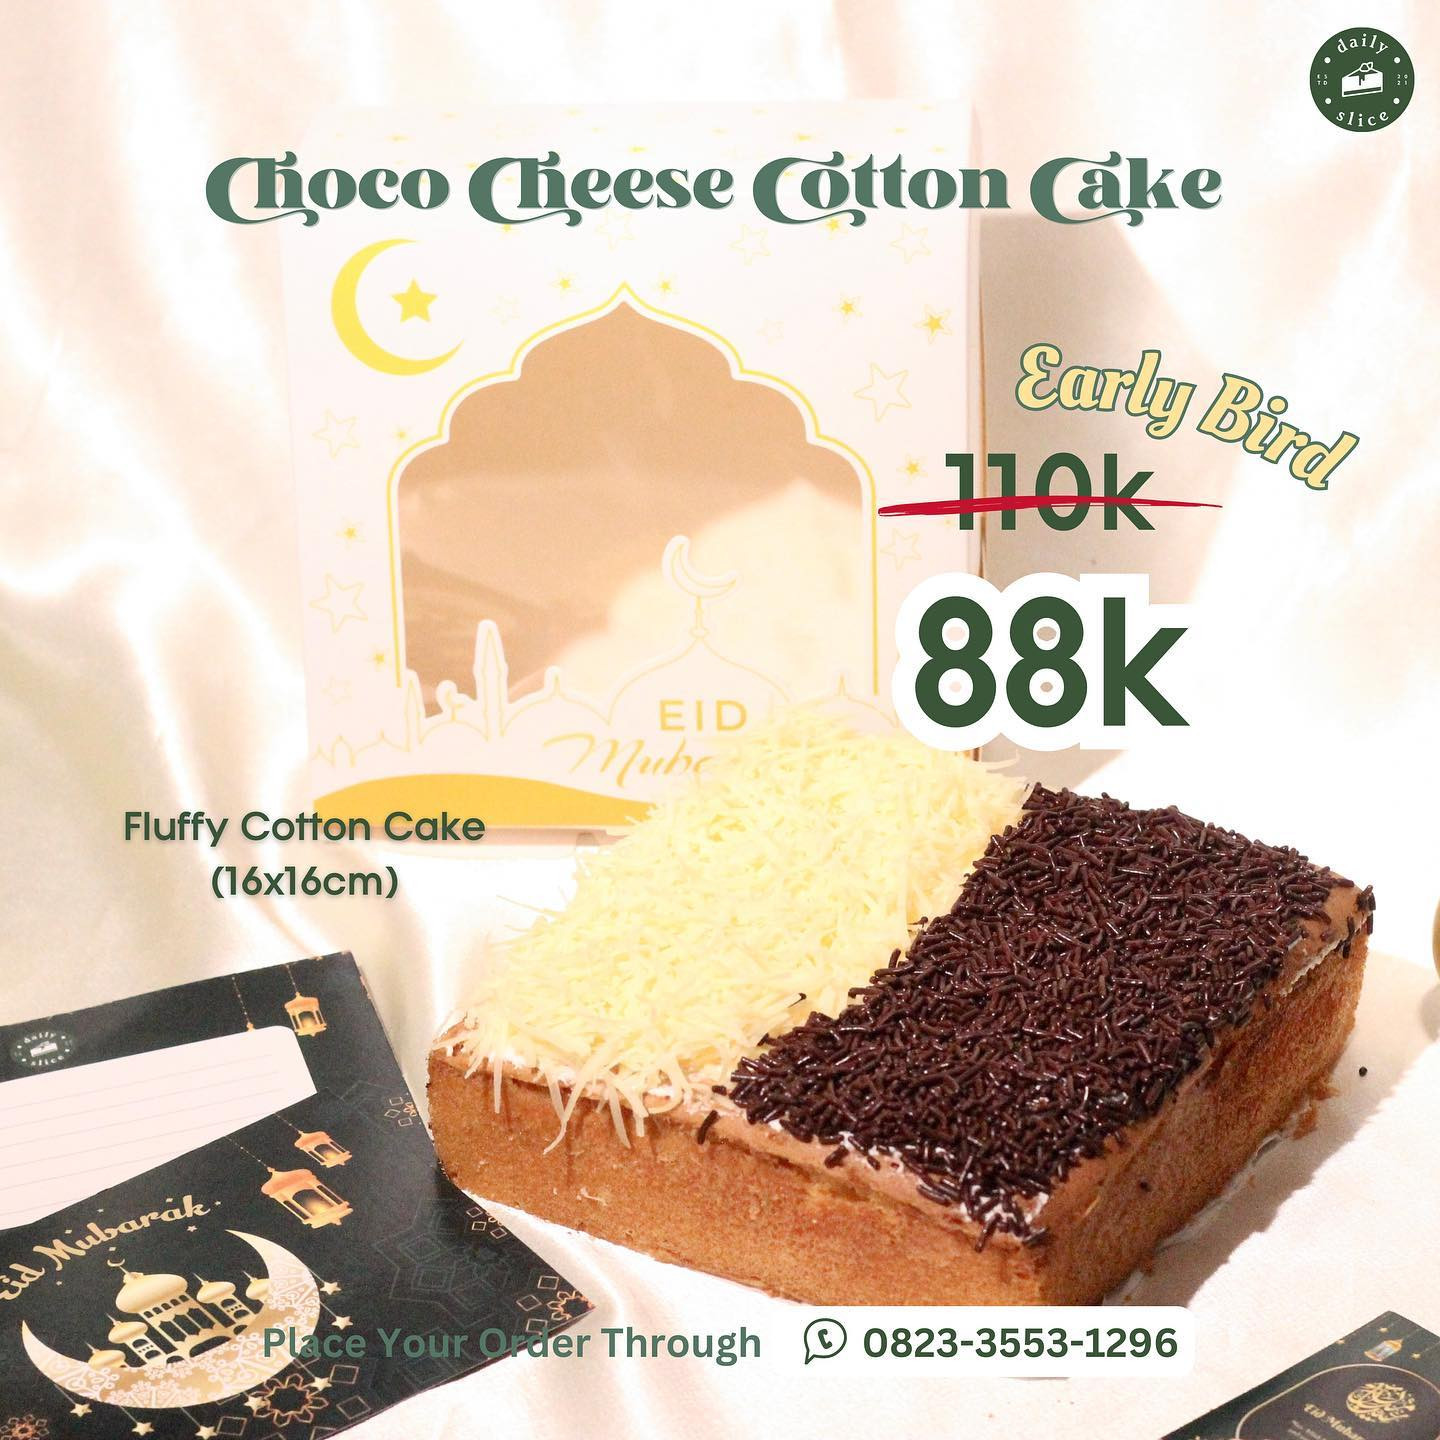 Choco Cheese Cotton Cake